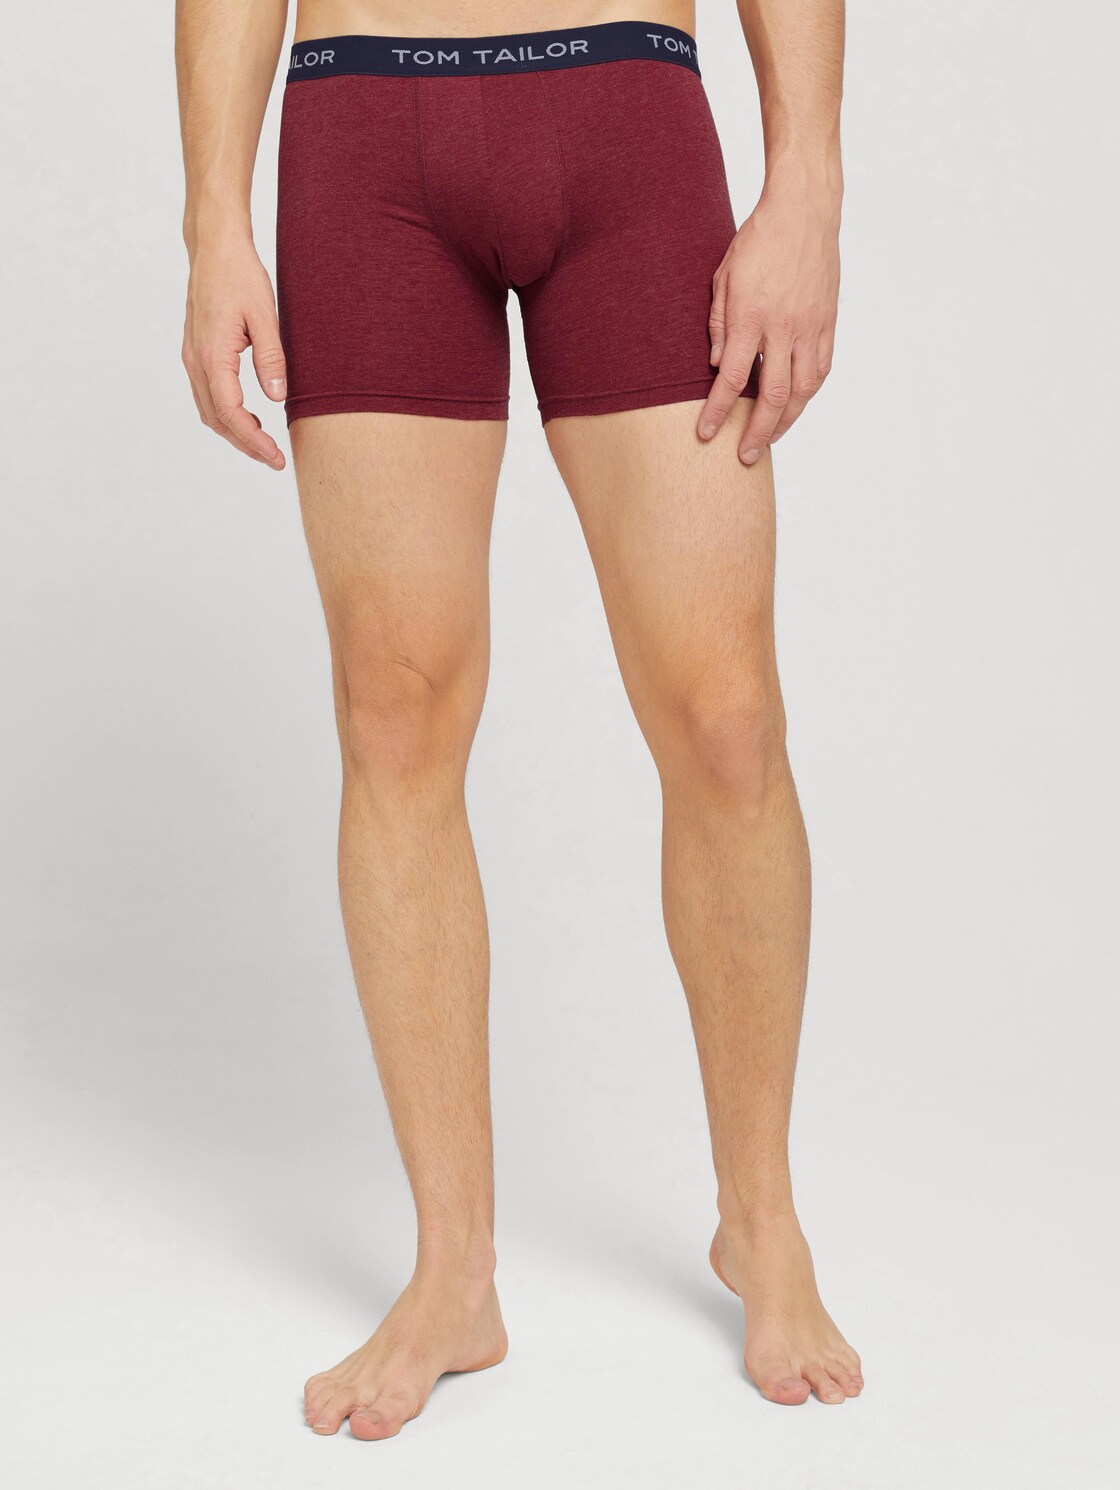 TOM TAILOR Set van 2 Long Pants in gemêleerde look, Mannen, rood, Größe S/4